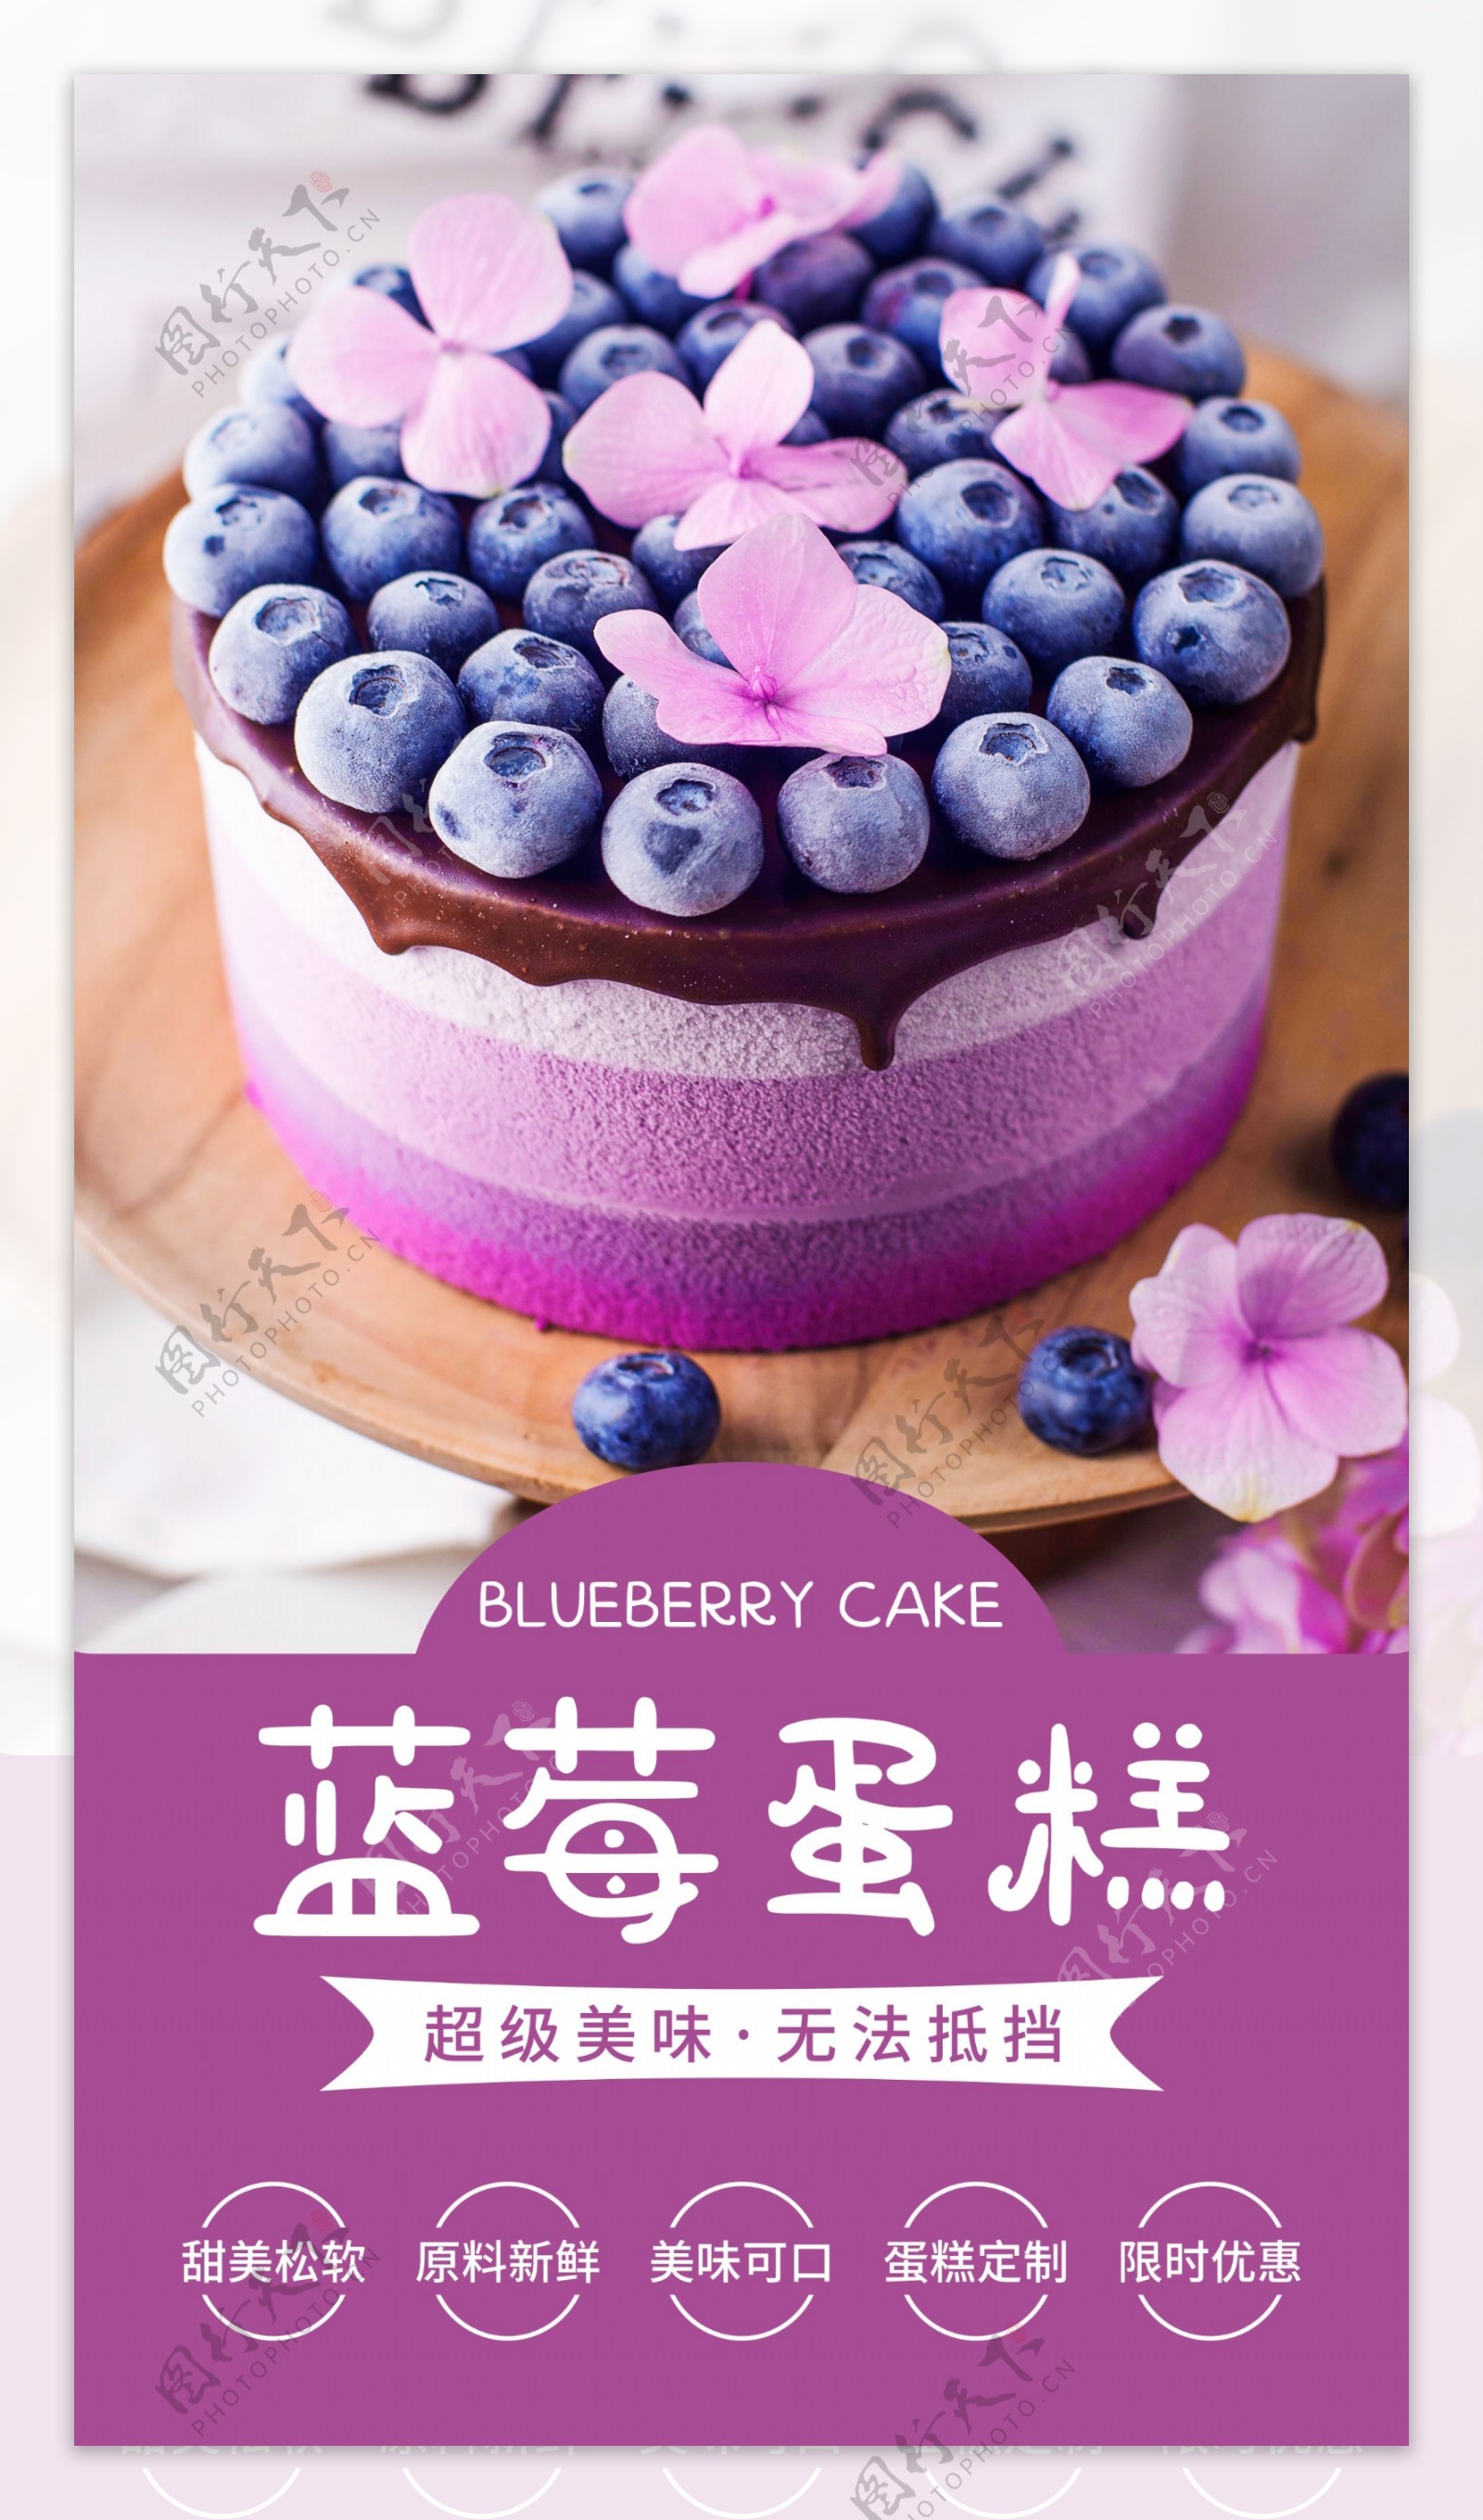 蓝莓蛋糕甜品活动海报素材图片